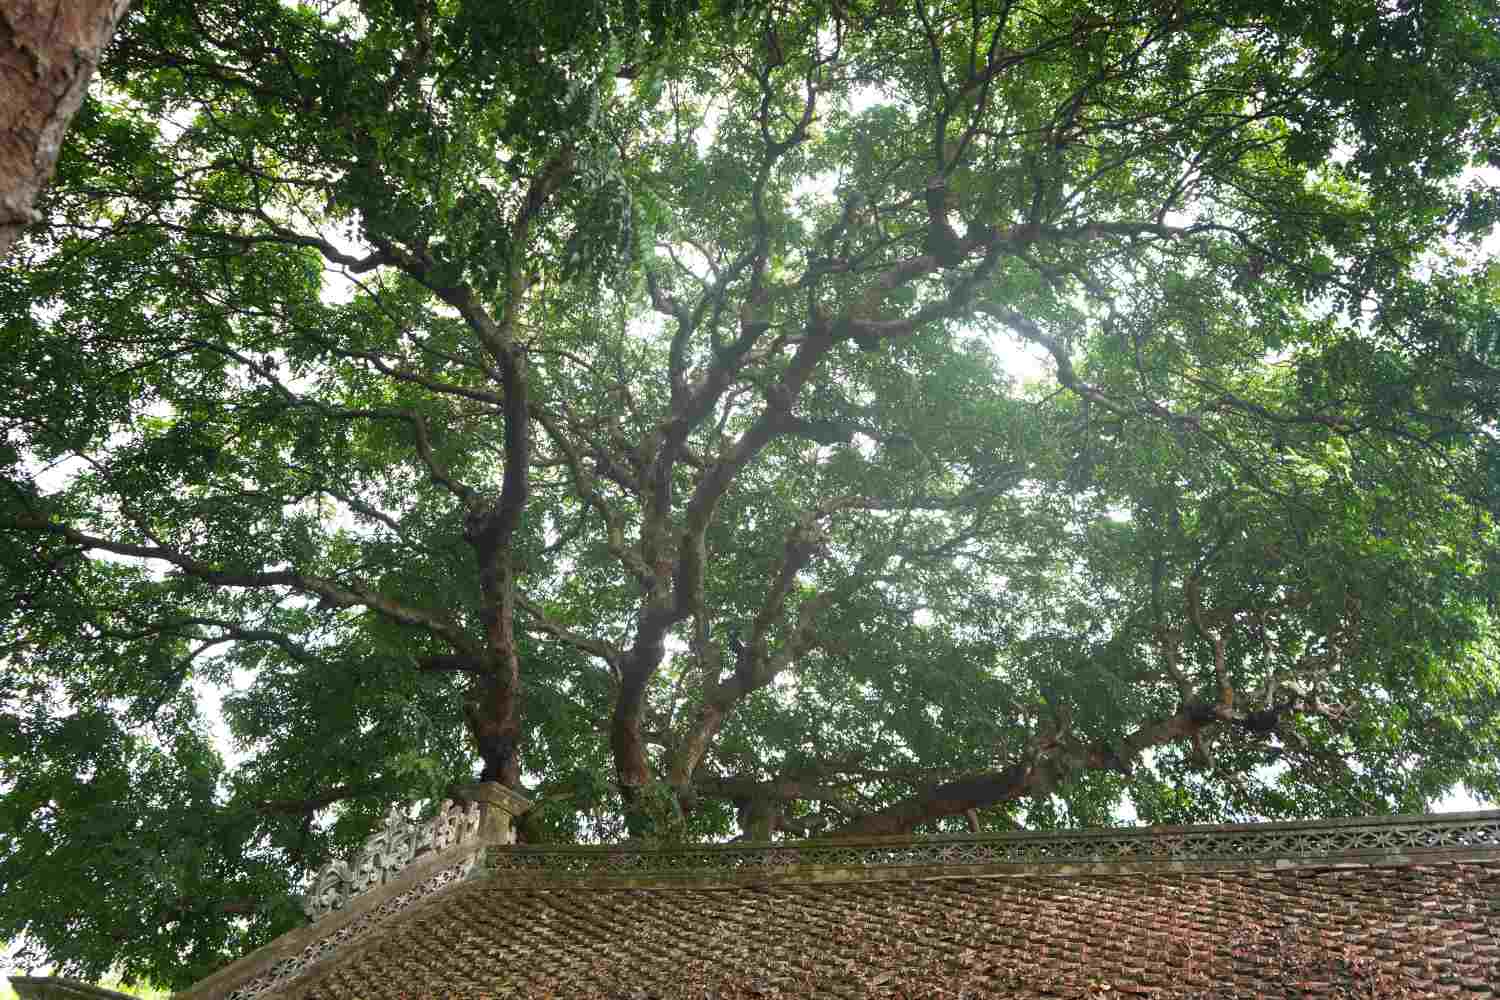 Cây lim có chu vi thân cây ở độ cao cách mặt đất 1,3m là hơn 3 m, đường kính gần 1 m. Cây cao hơn 25 m. 